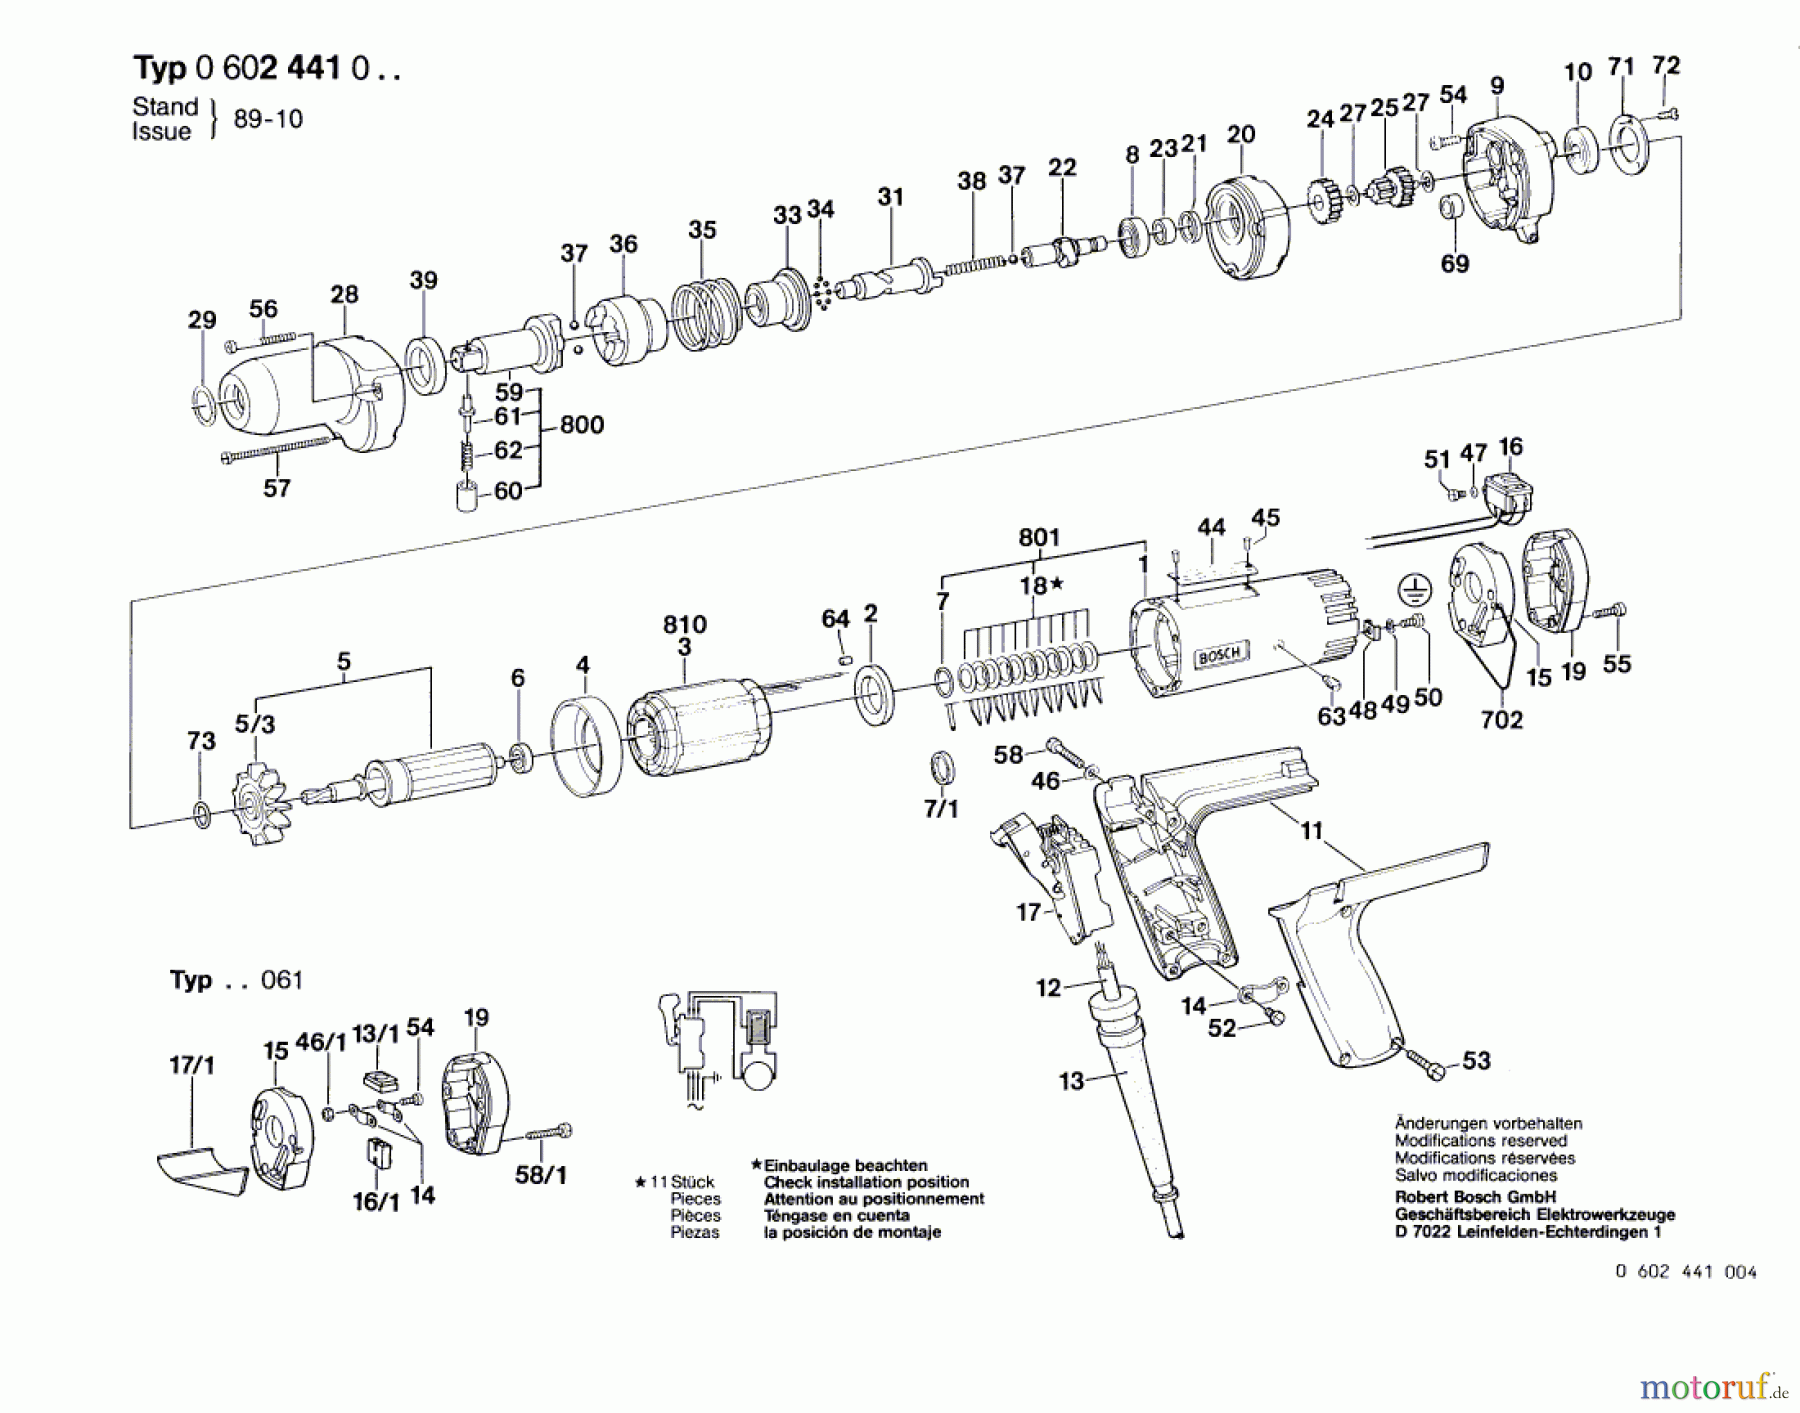  Bosch Werkzeug Hf-Schlagschrauber ---- Seite 1